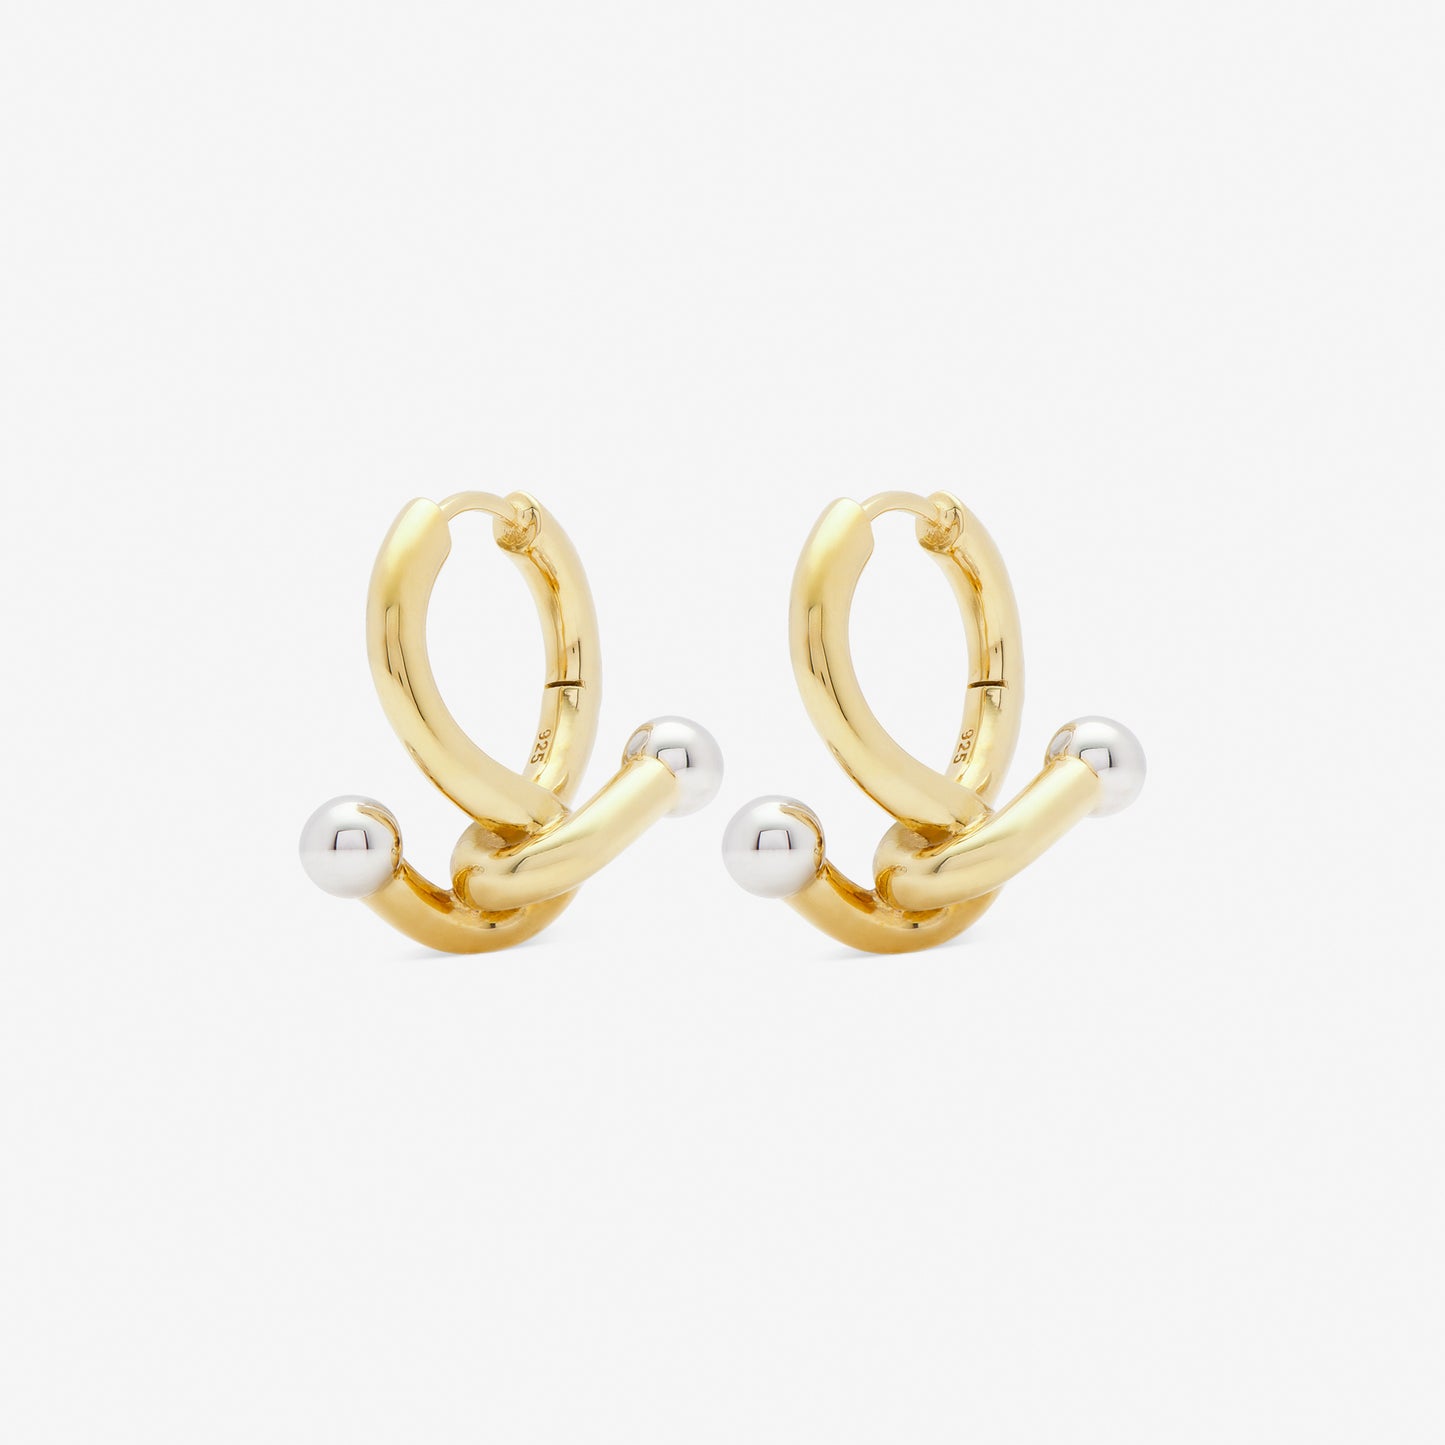 falcate earrings gold from side